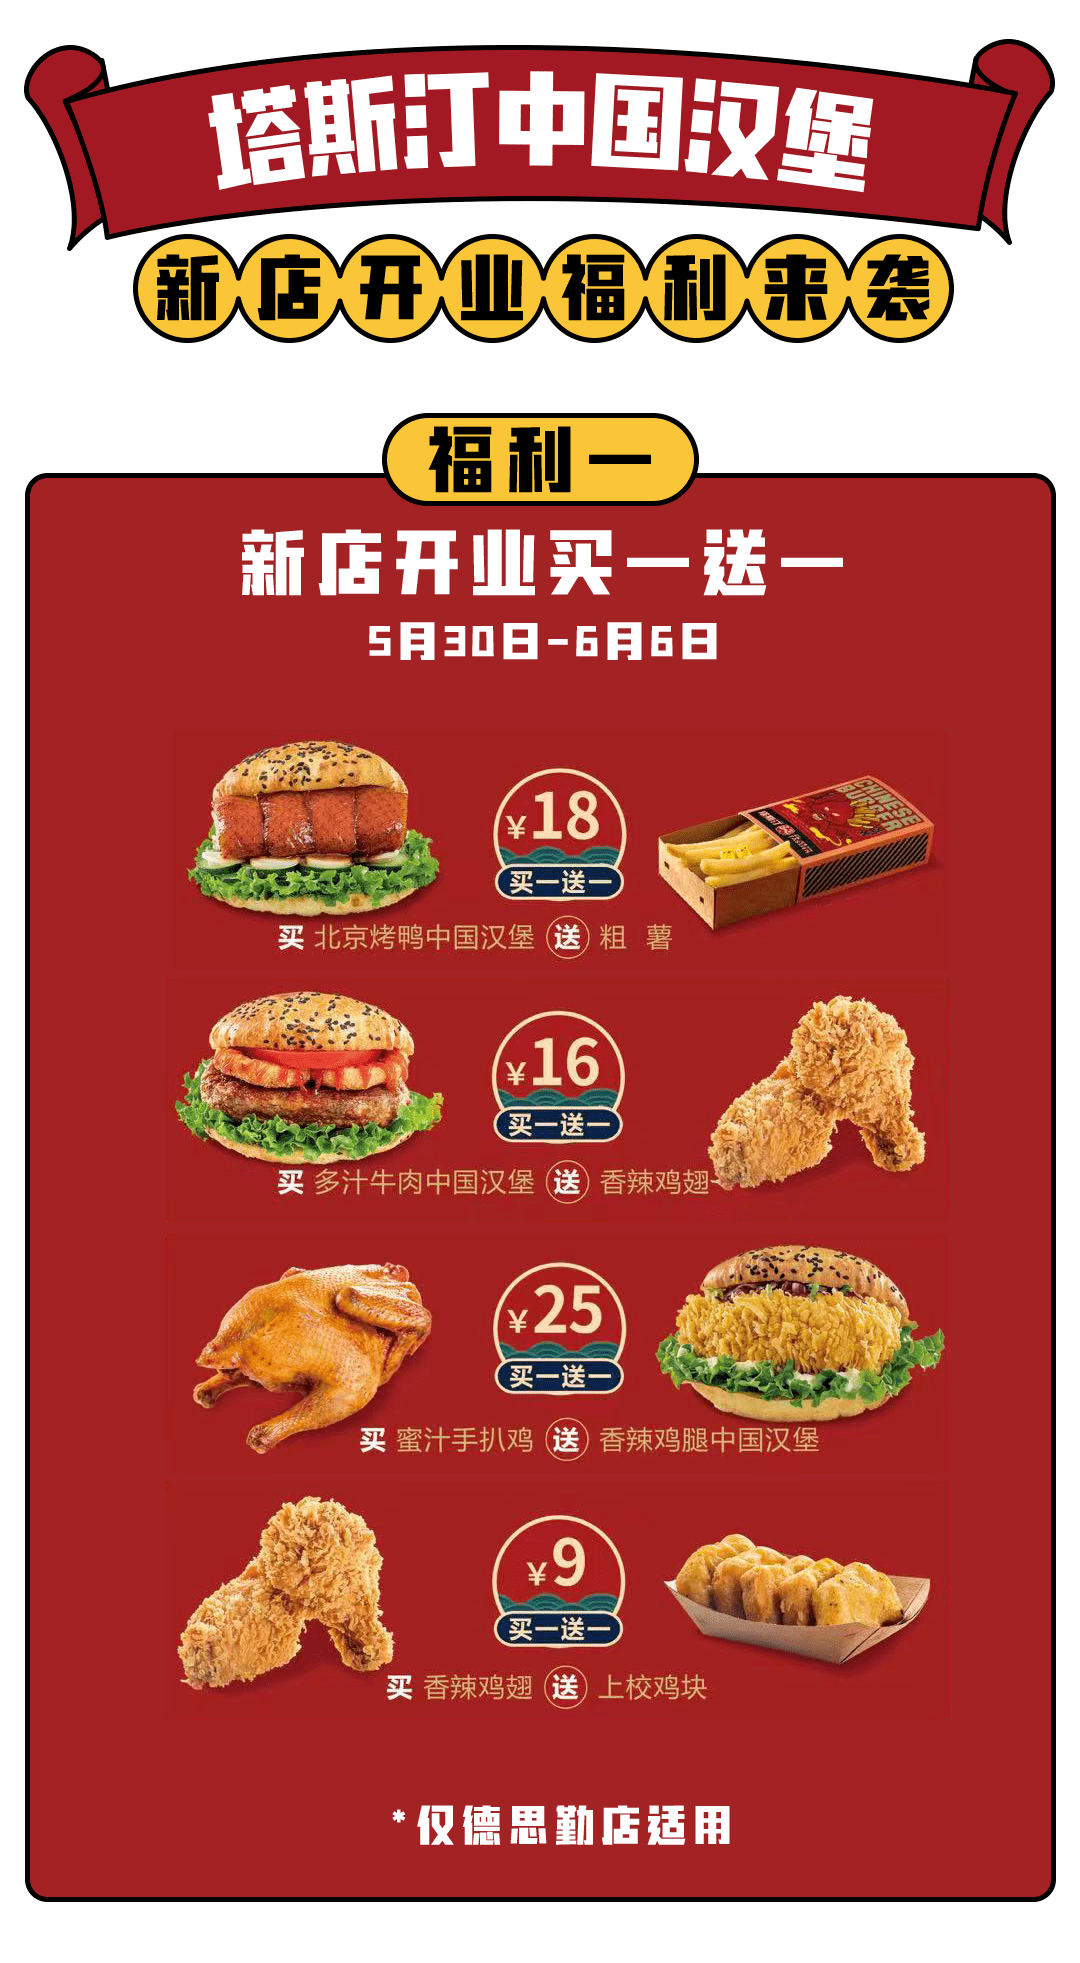 塔斯汀中国汉堡价目表图片